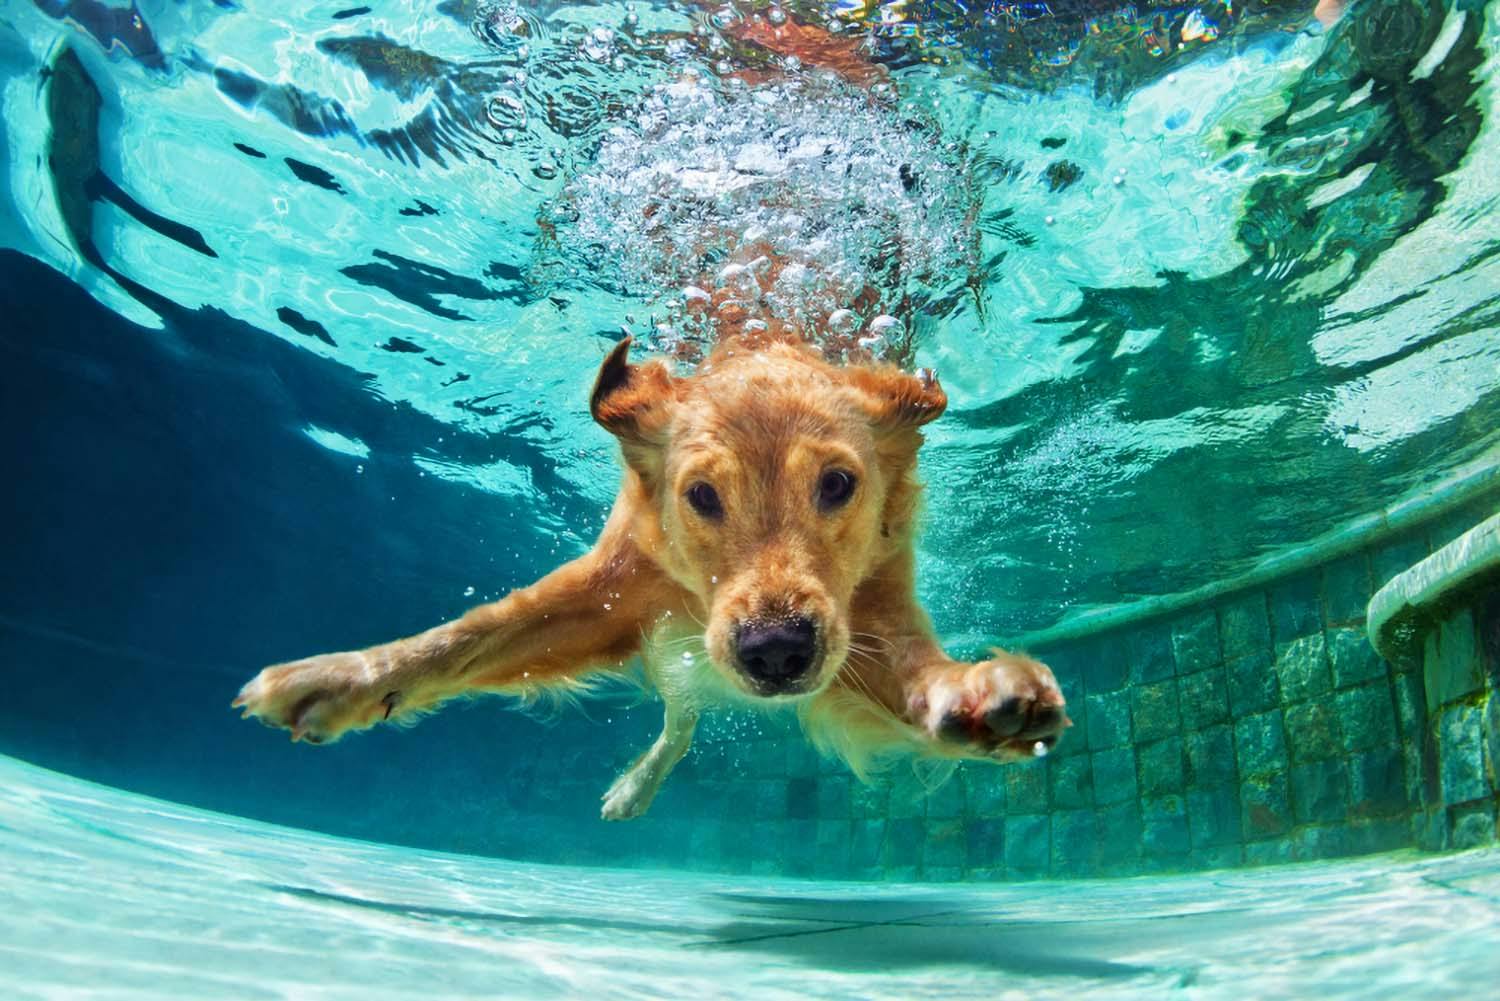 獣医師監修 わんちゃんとの水遊びを安全に楽しむコツとは 水泳する時の基礎知識や注意点を解説 Health 健康 わんクォール